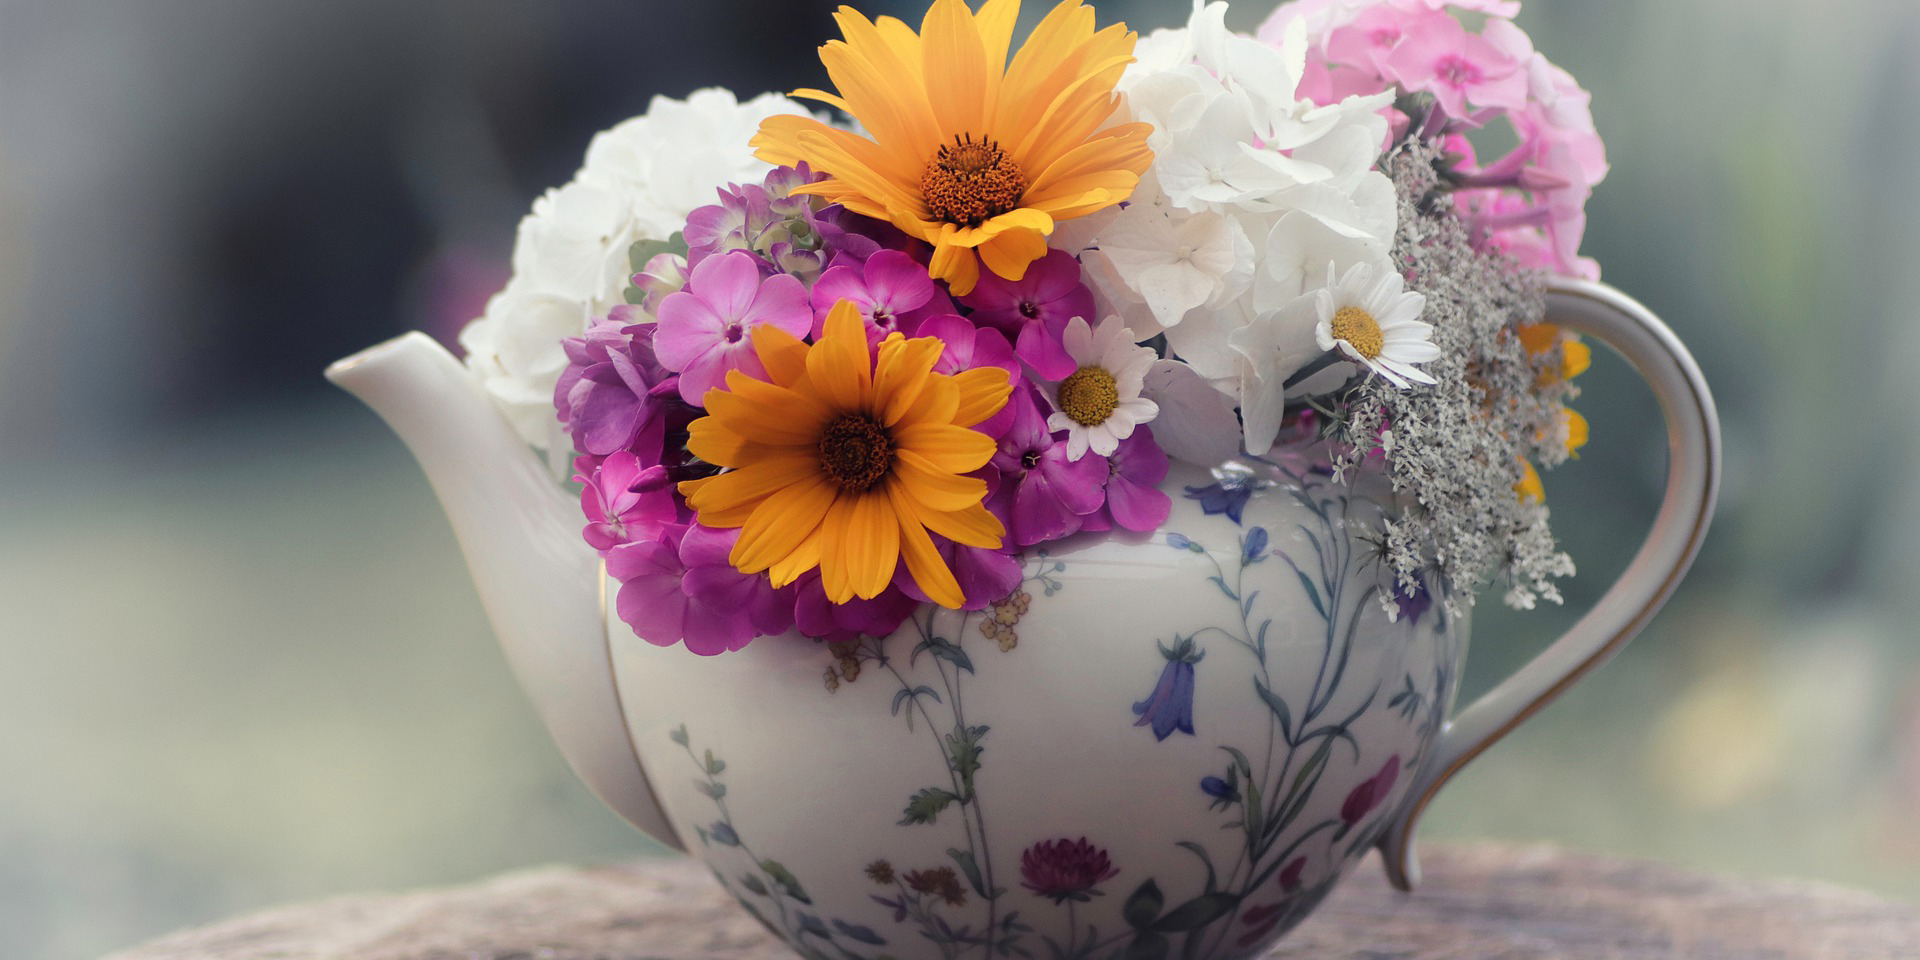 Porzellanteekanne mit Blumen ,© pixabay/Lolame 